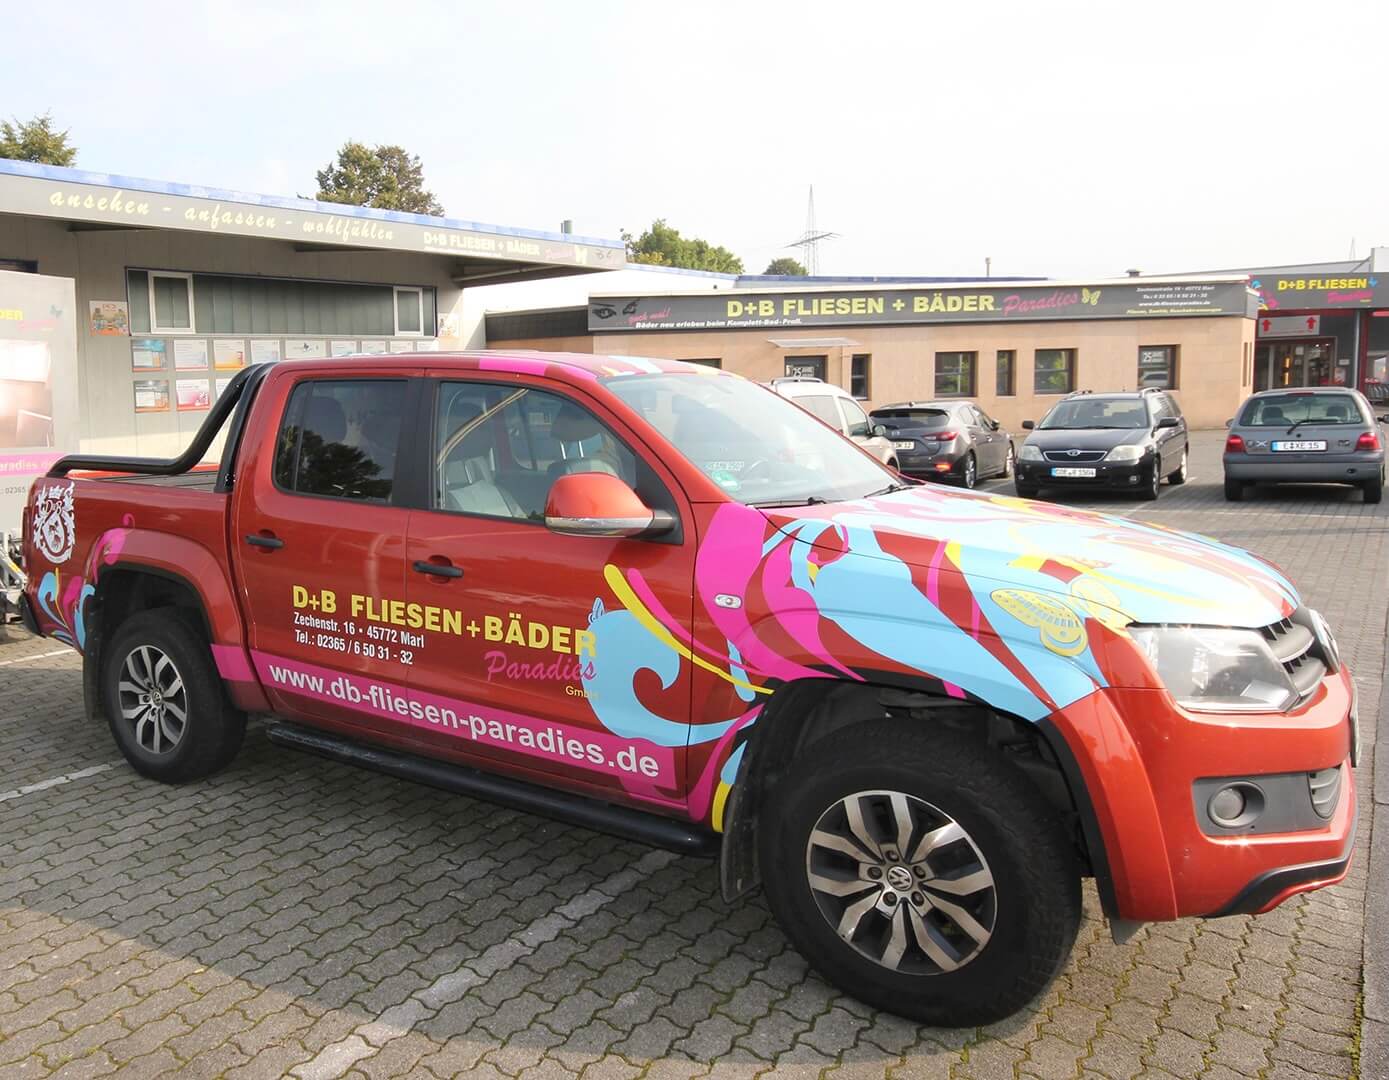 Fahrzeug von D+B Fliesen Paradies steht auf einem Parkplatz im Raum Recklinghausen, Dorsten und Umgebung